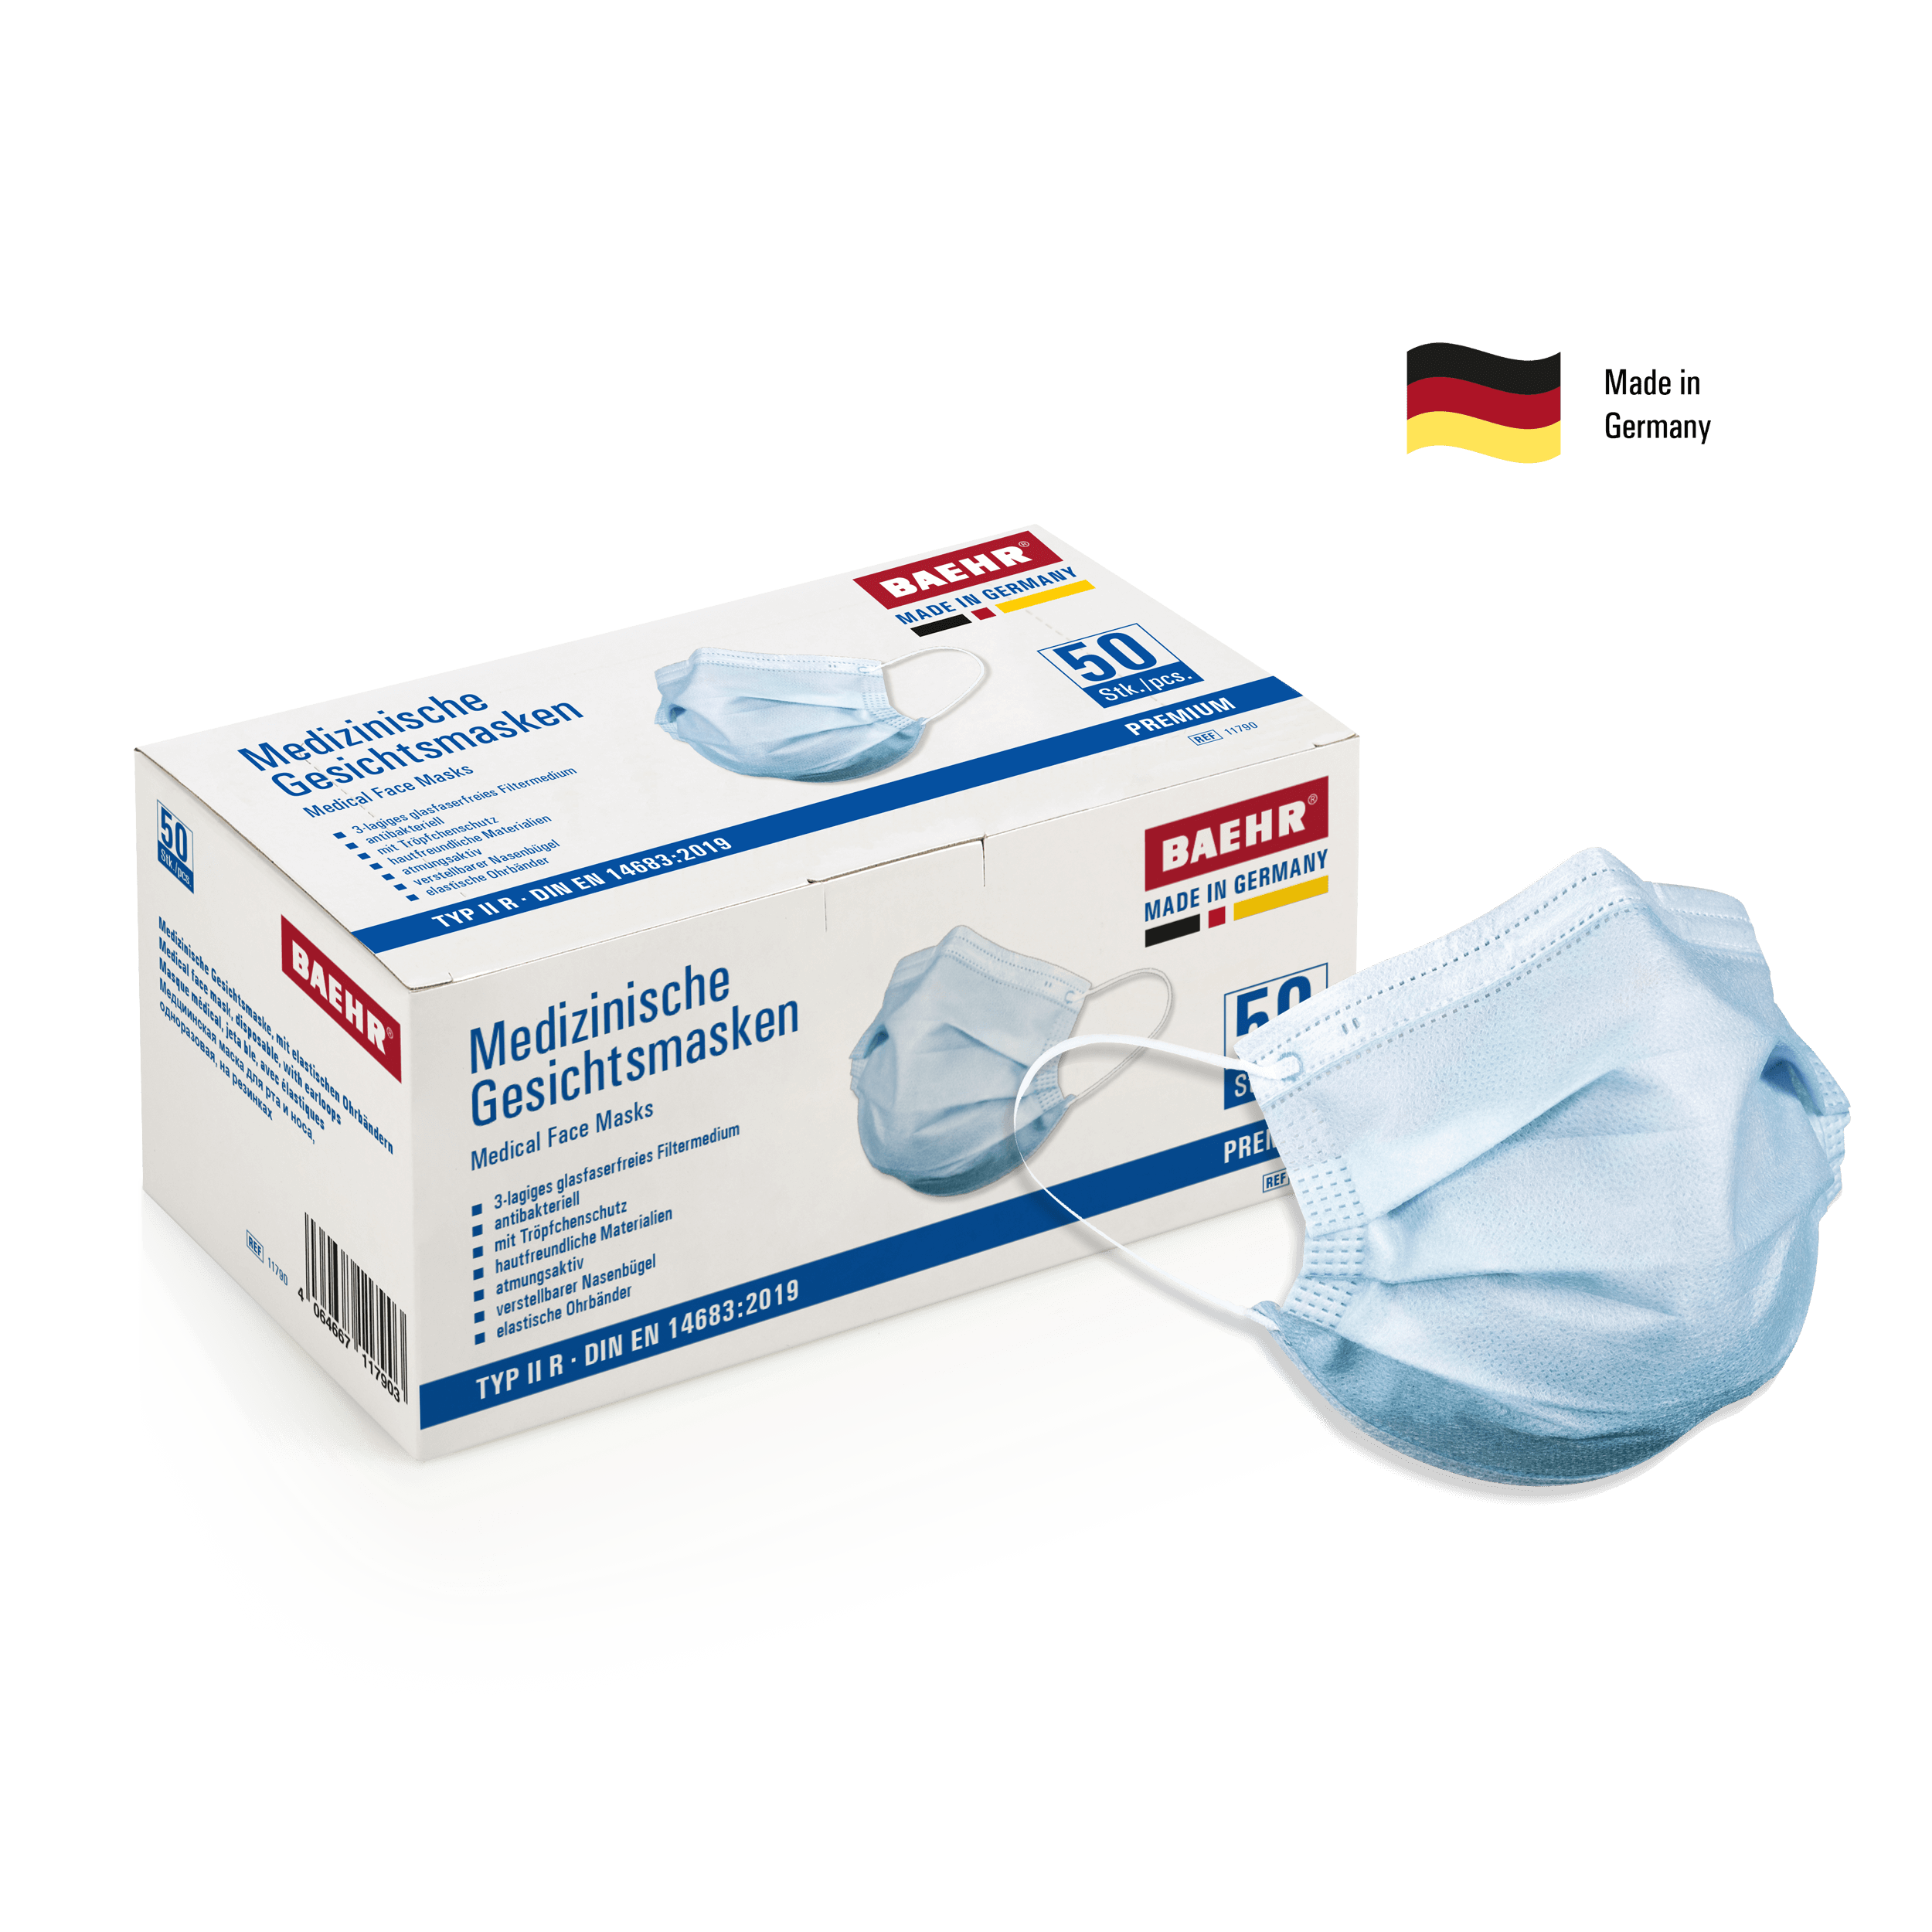 BAEHR Medizinische Gesichtsmasken PREMIUM 50 Stück - Made in Germany